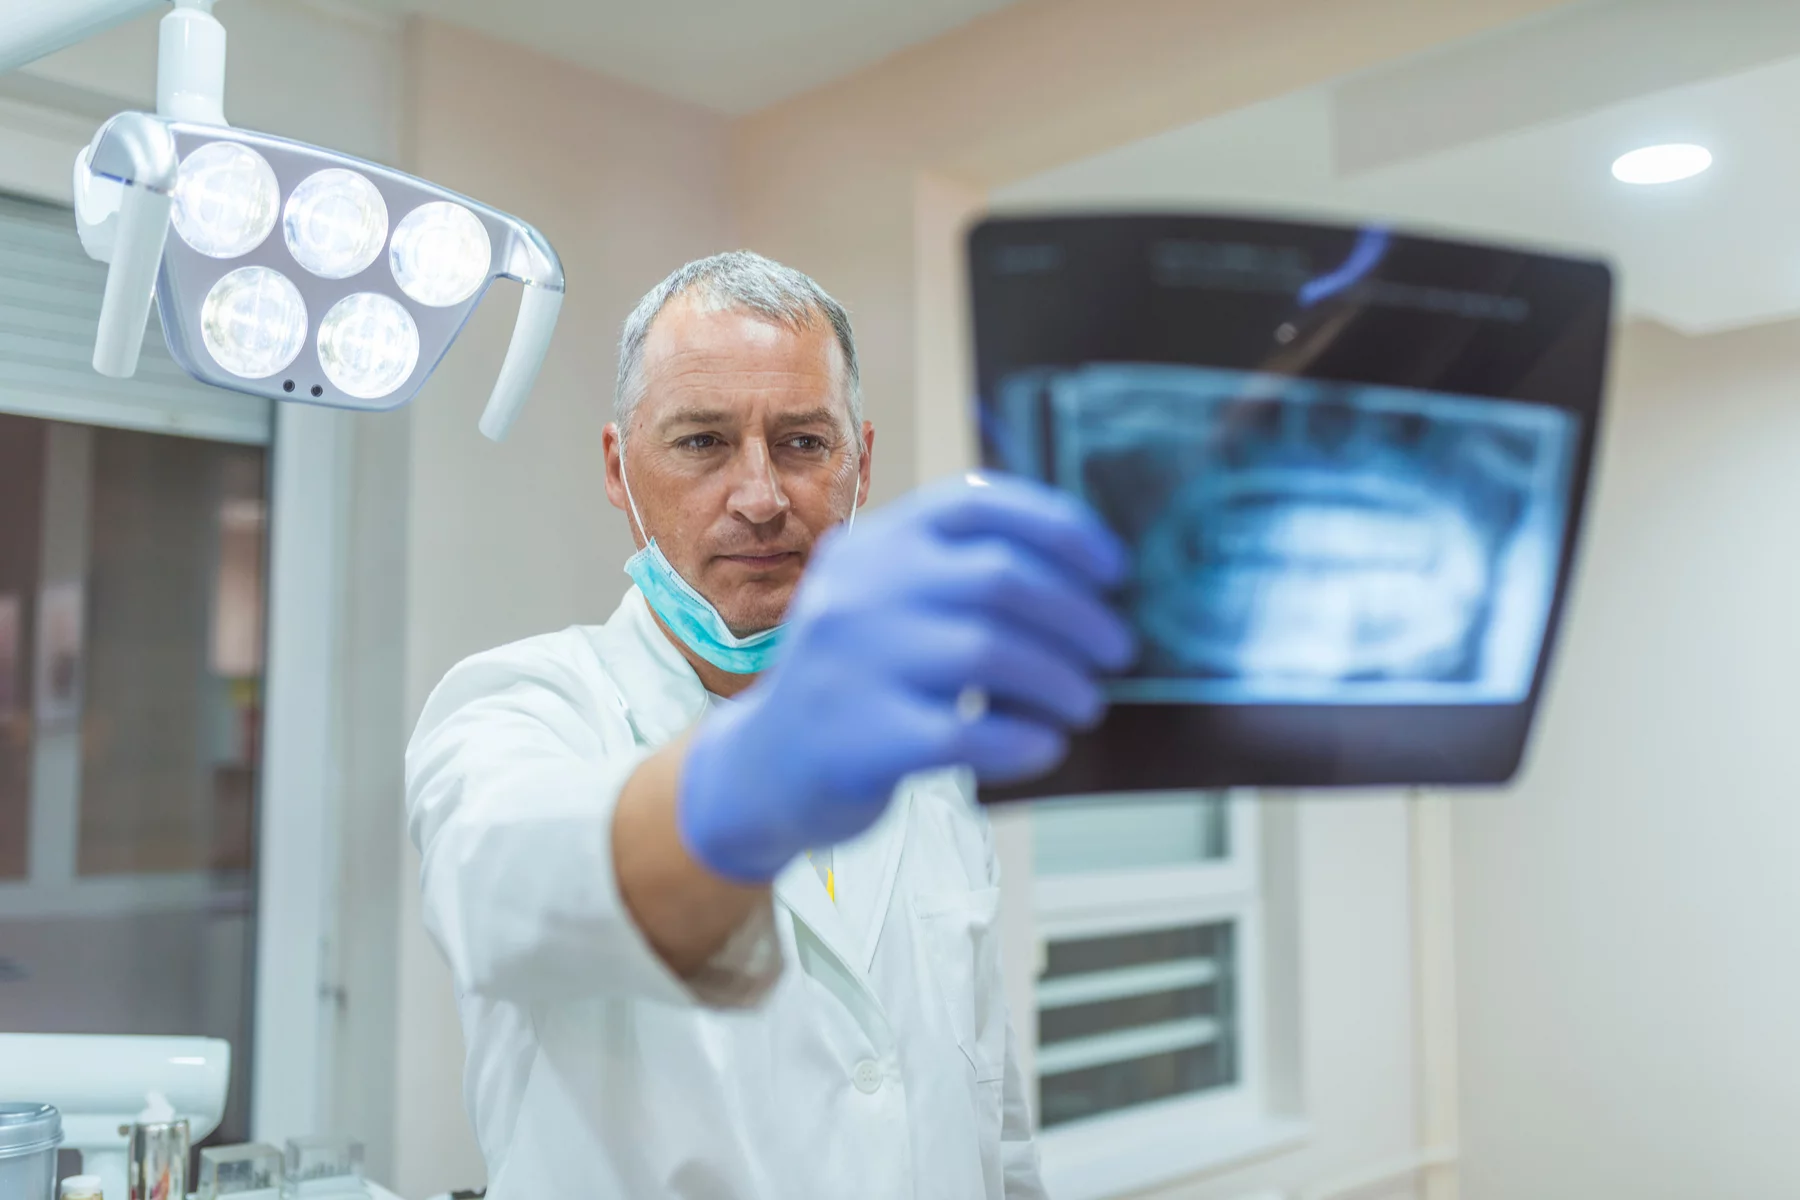 Dentist examining an X-ray